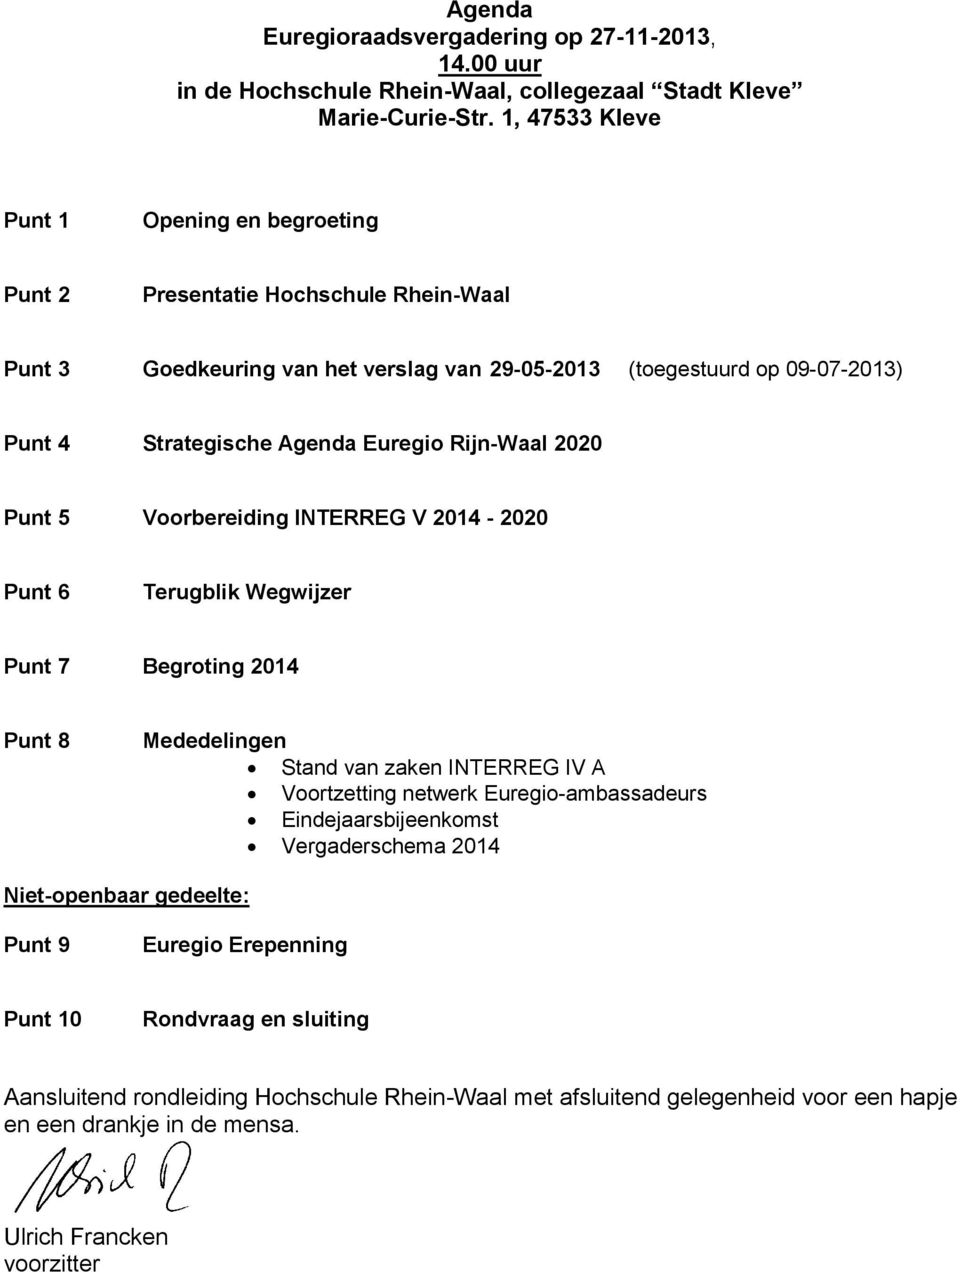 Euregio Rijn-Waal 2020 Punt 5 Voorbereiding INTERREG V 2014-2020 Punt 6 Terugblik Wegwijzer Punt 7 Begroting 2014 Punt 8 Mededelingen Stand van zaken INTERREG IV A Voortzetting netwerk